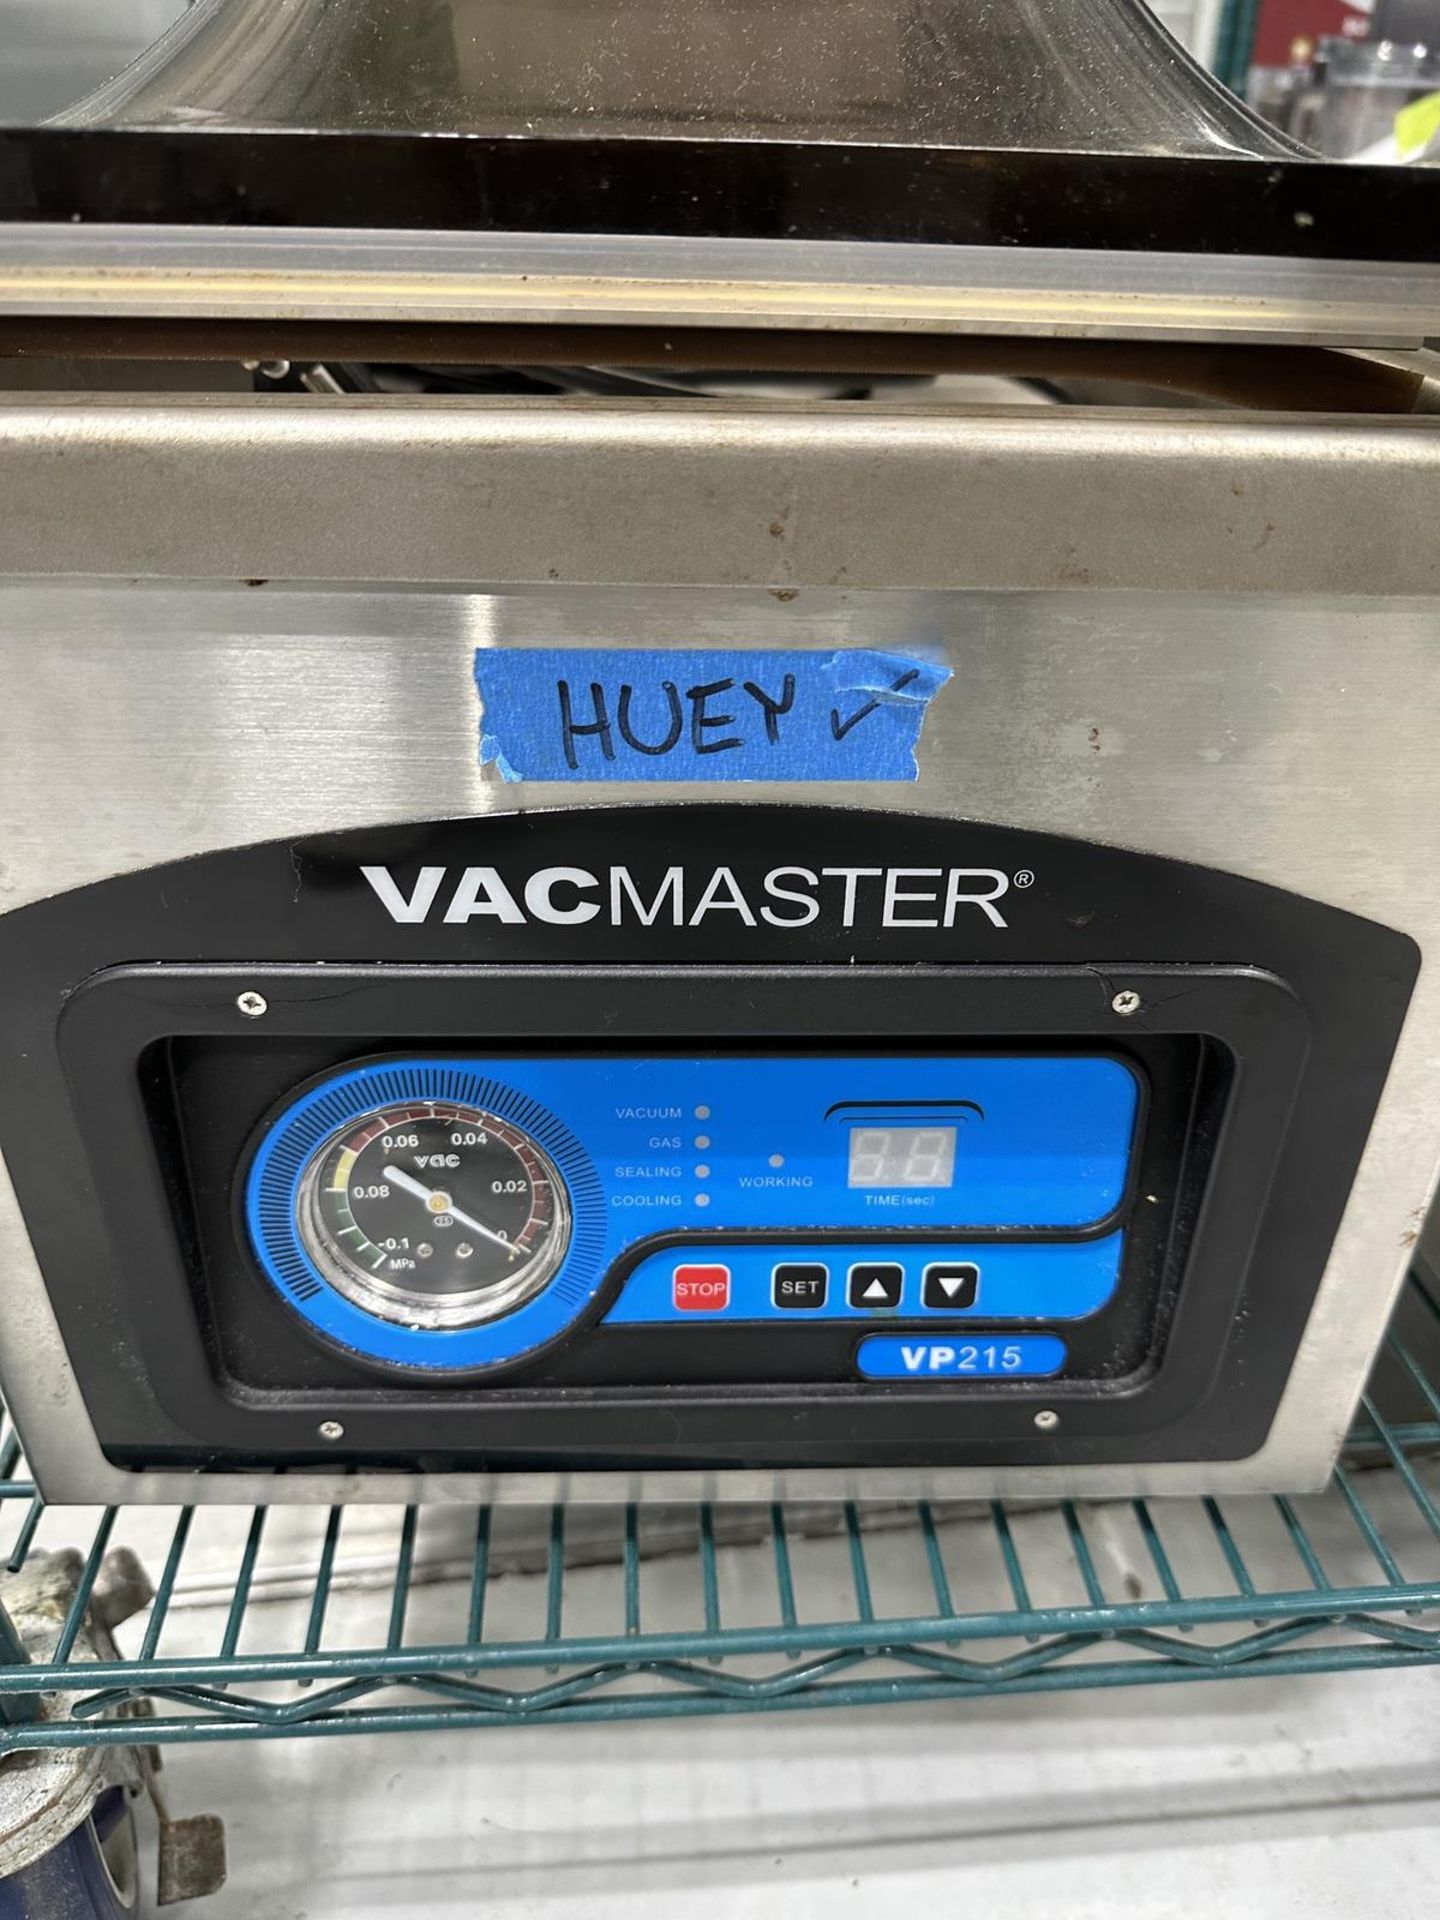 Vacmaster VP215 Vacuum Sealer | Rig Fee $50 - Image 2 of 2